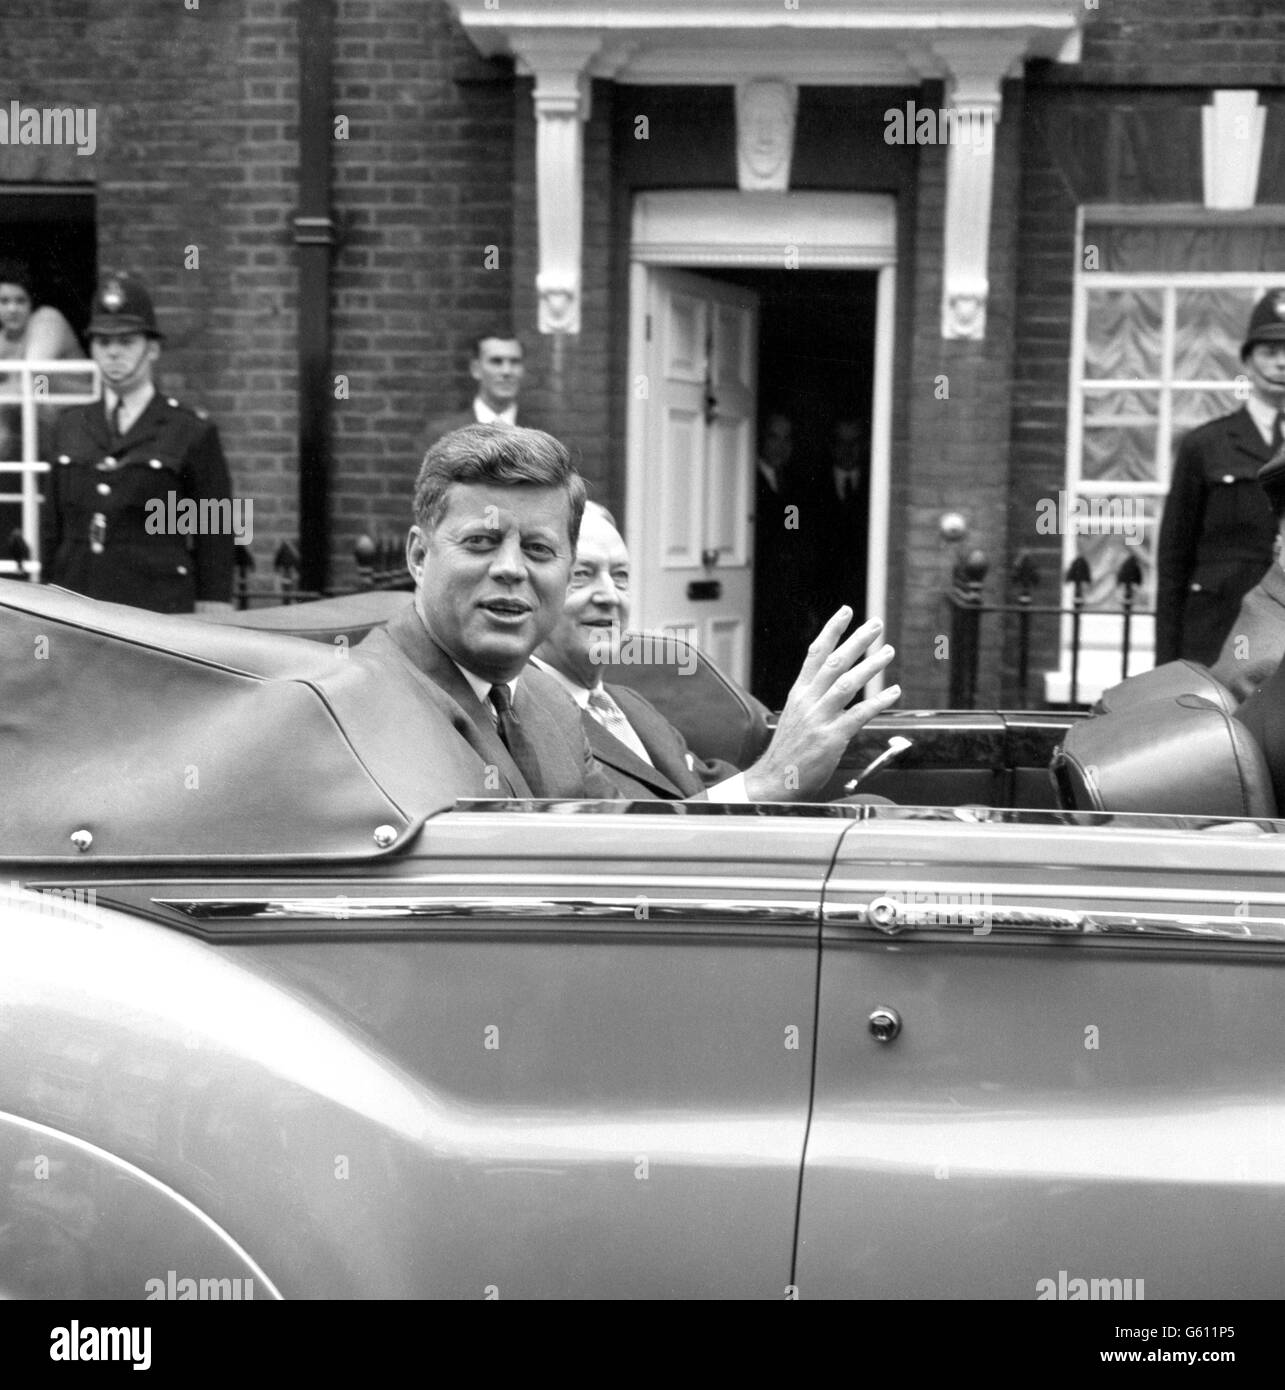 Il presidente John Kennedy dell'America si fa balzare mentre, in un'automobile aperta, lascia la residenza di Buckingham Palace di sua cognata per l'ambasciata degli Stati Uniti. Foto Stock